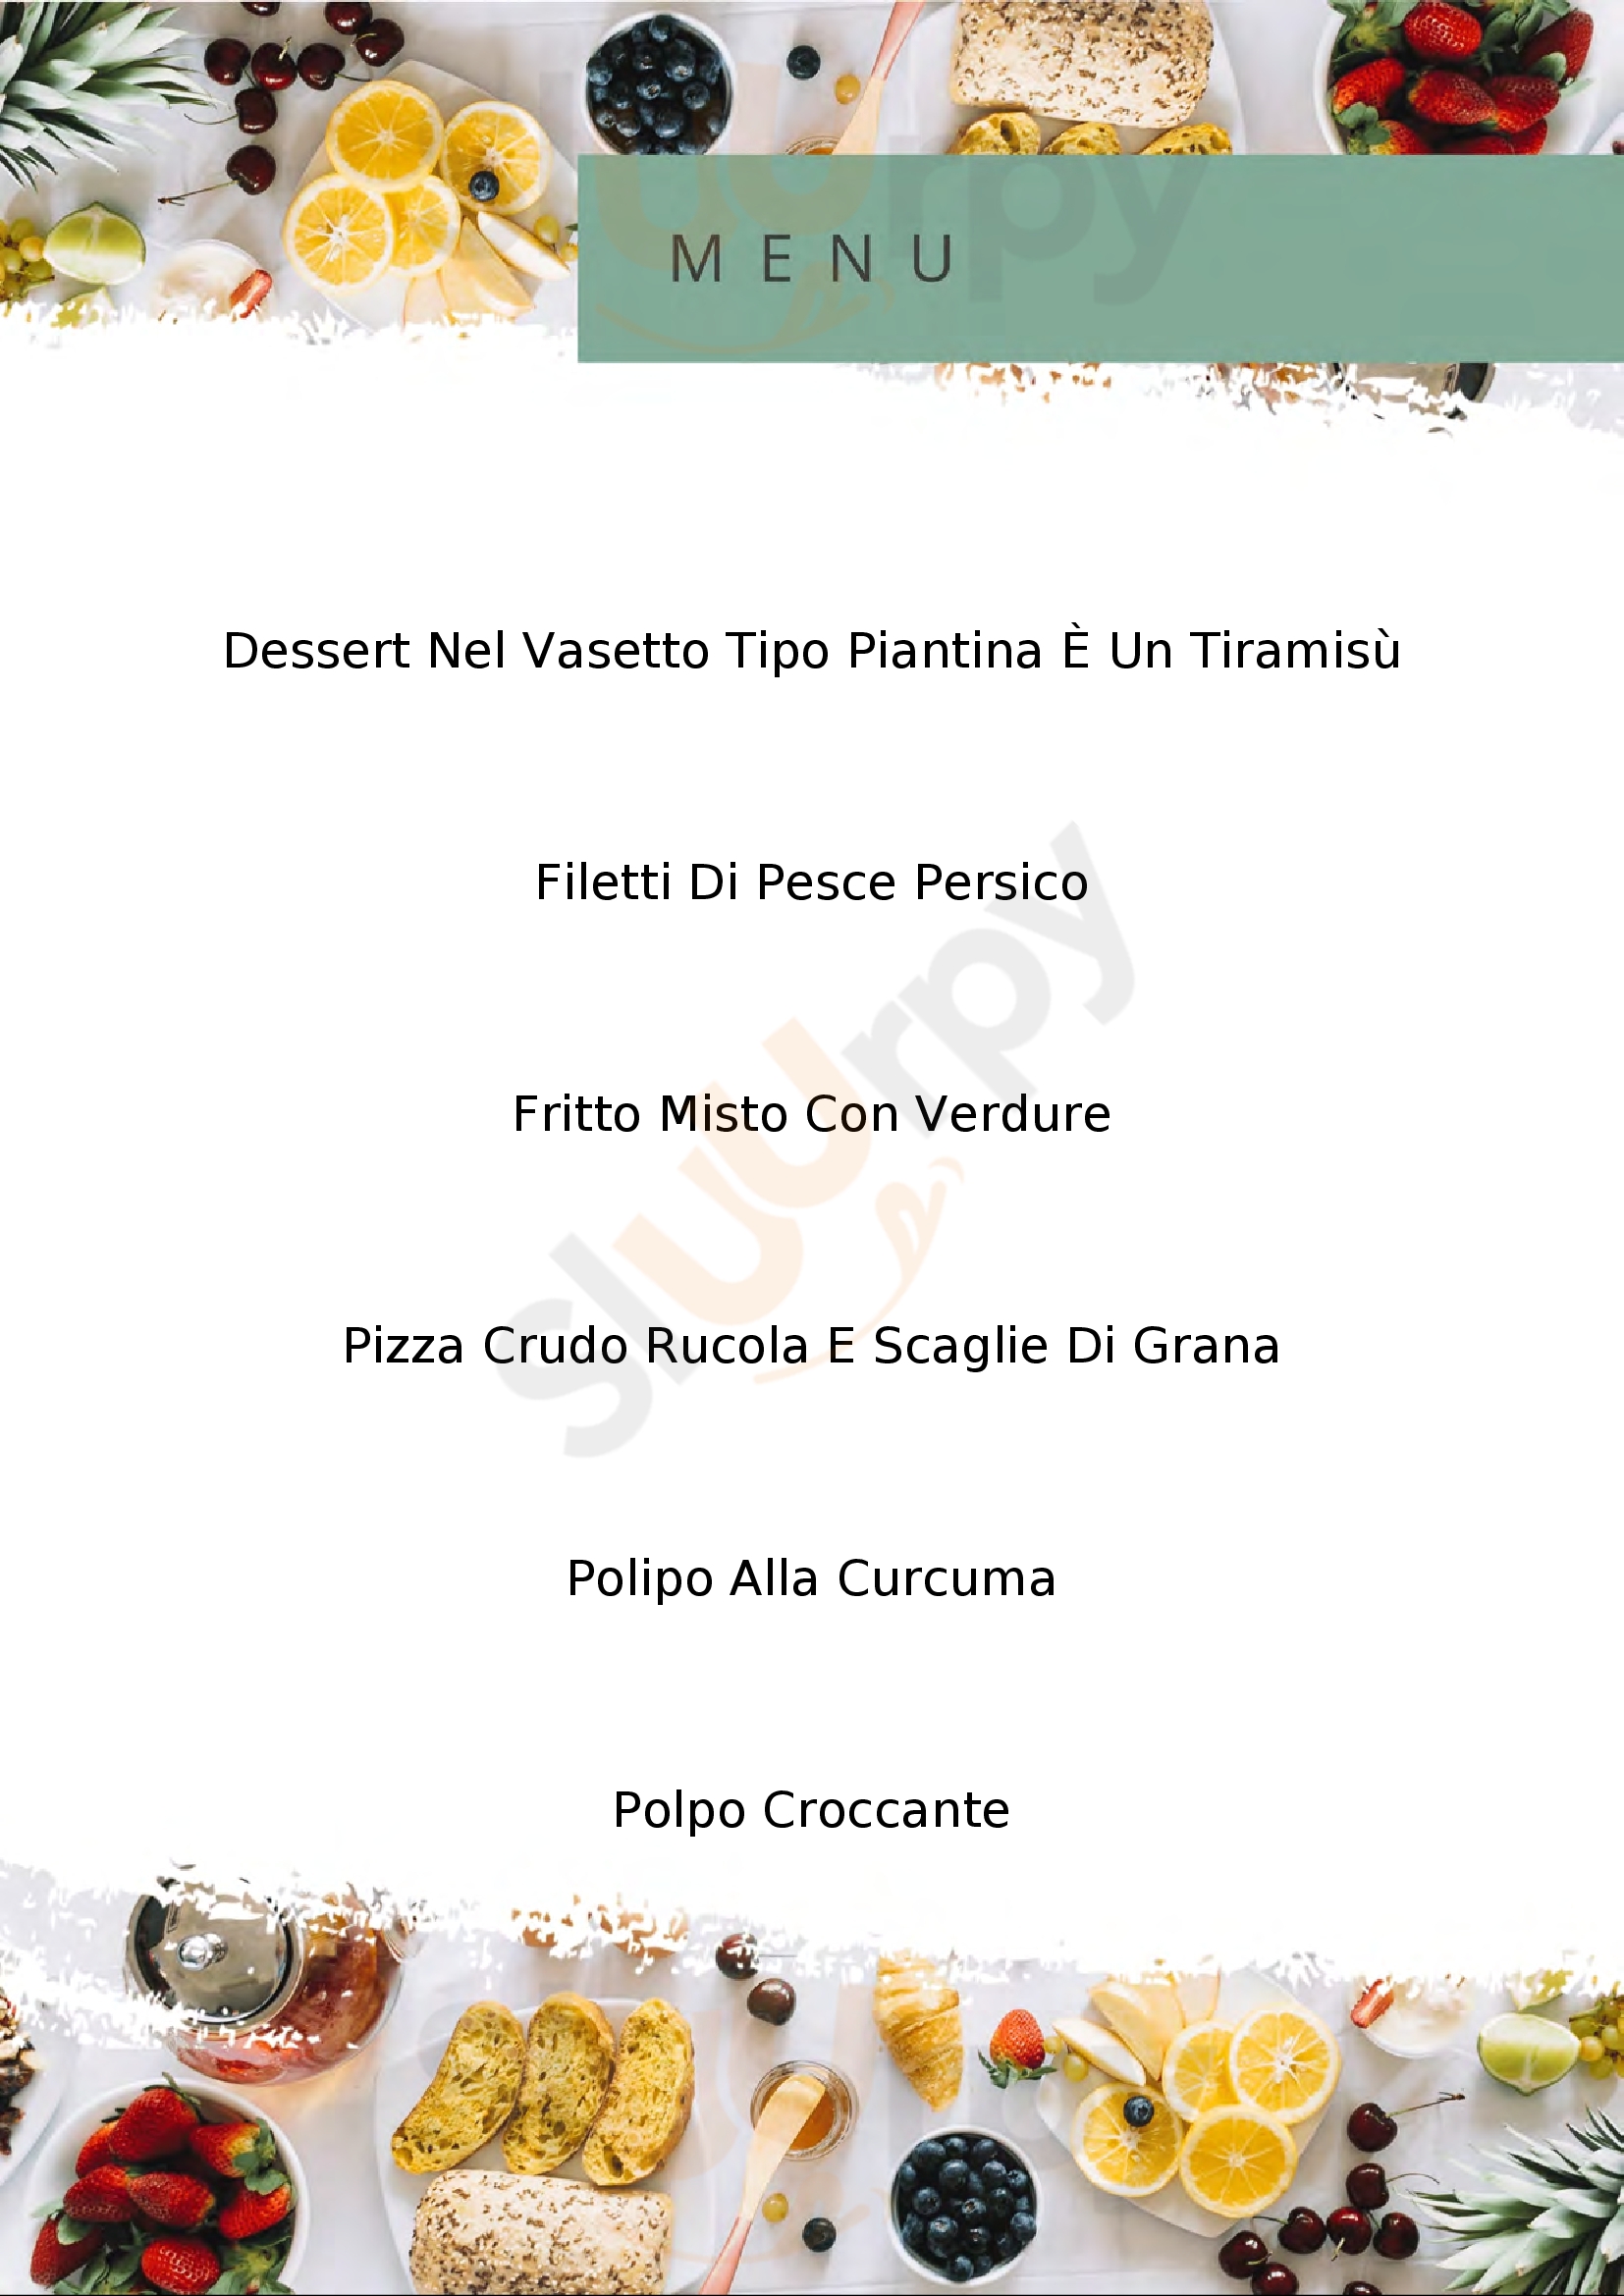 Ristorante Pizzeria Lido 2.0 Porto Ceresio menù 1 pagina